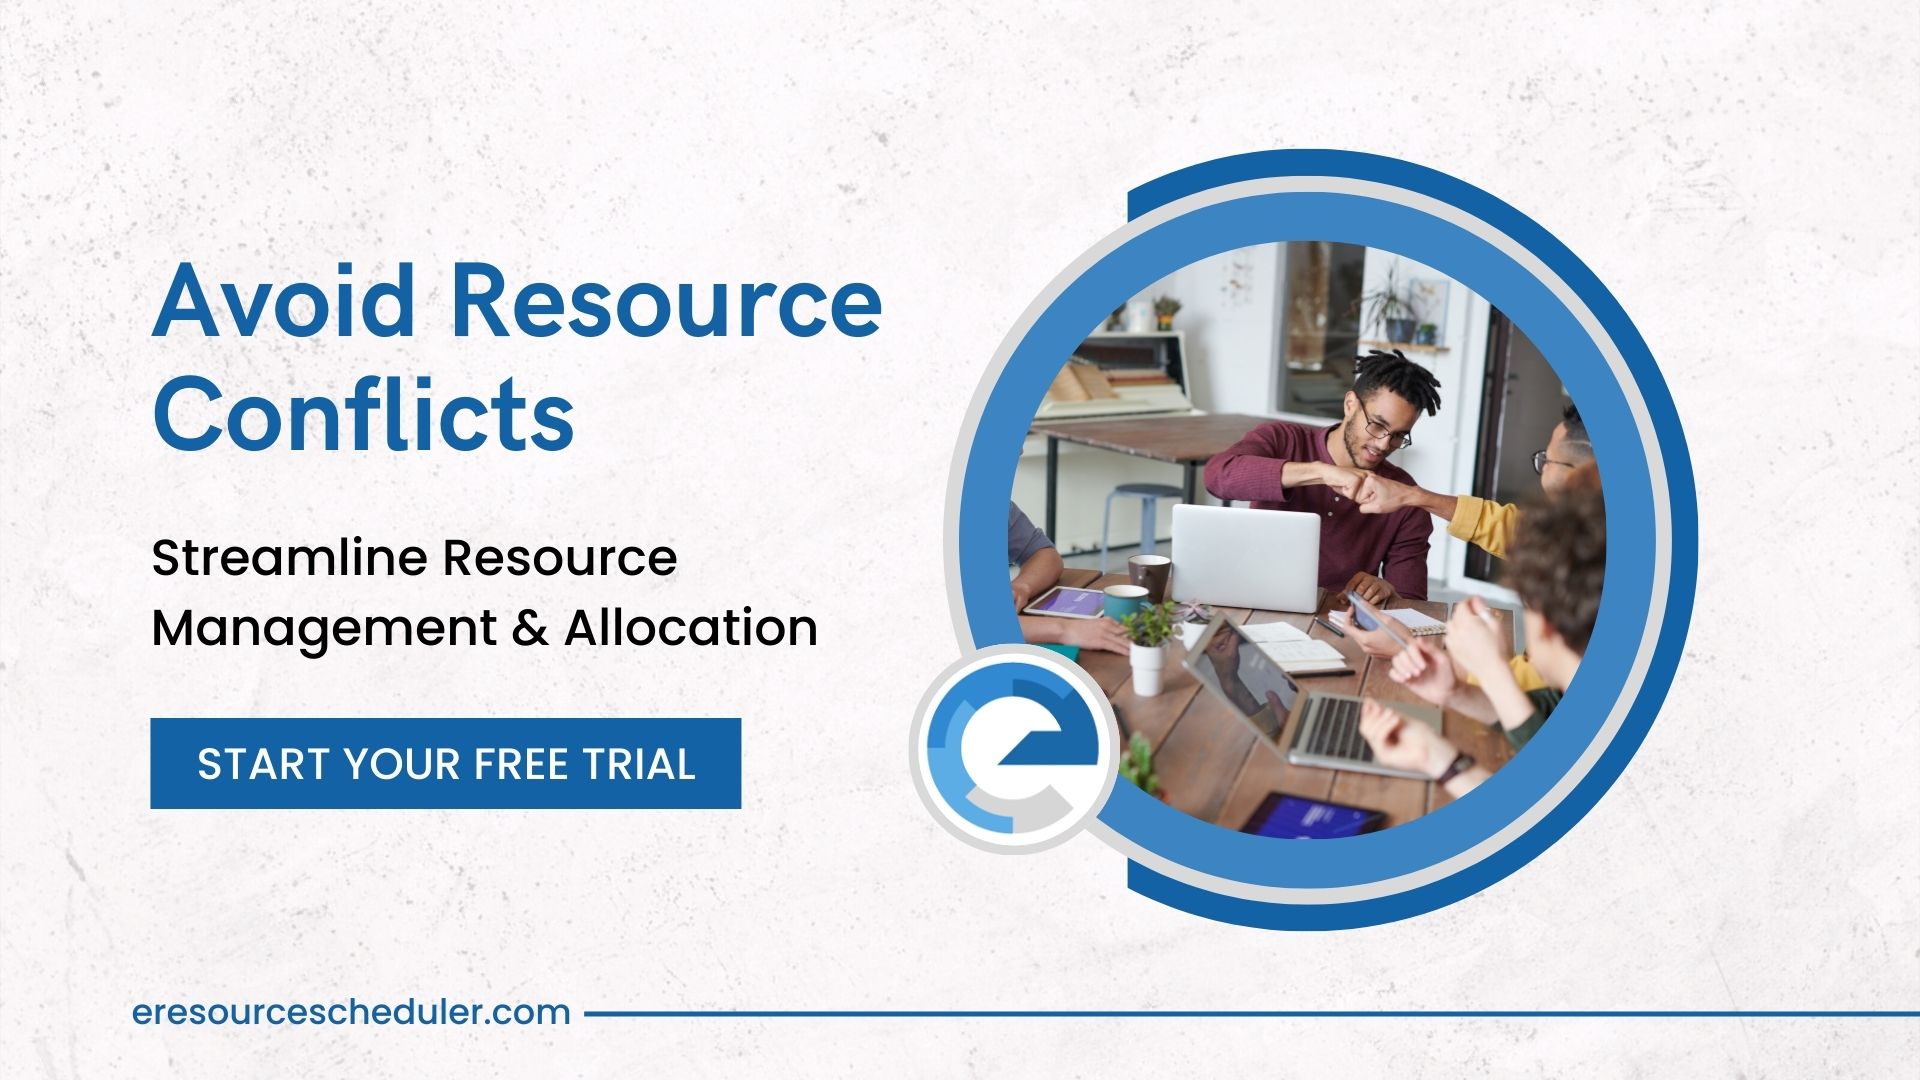 enterprise resource planning tool